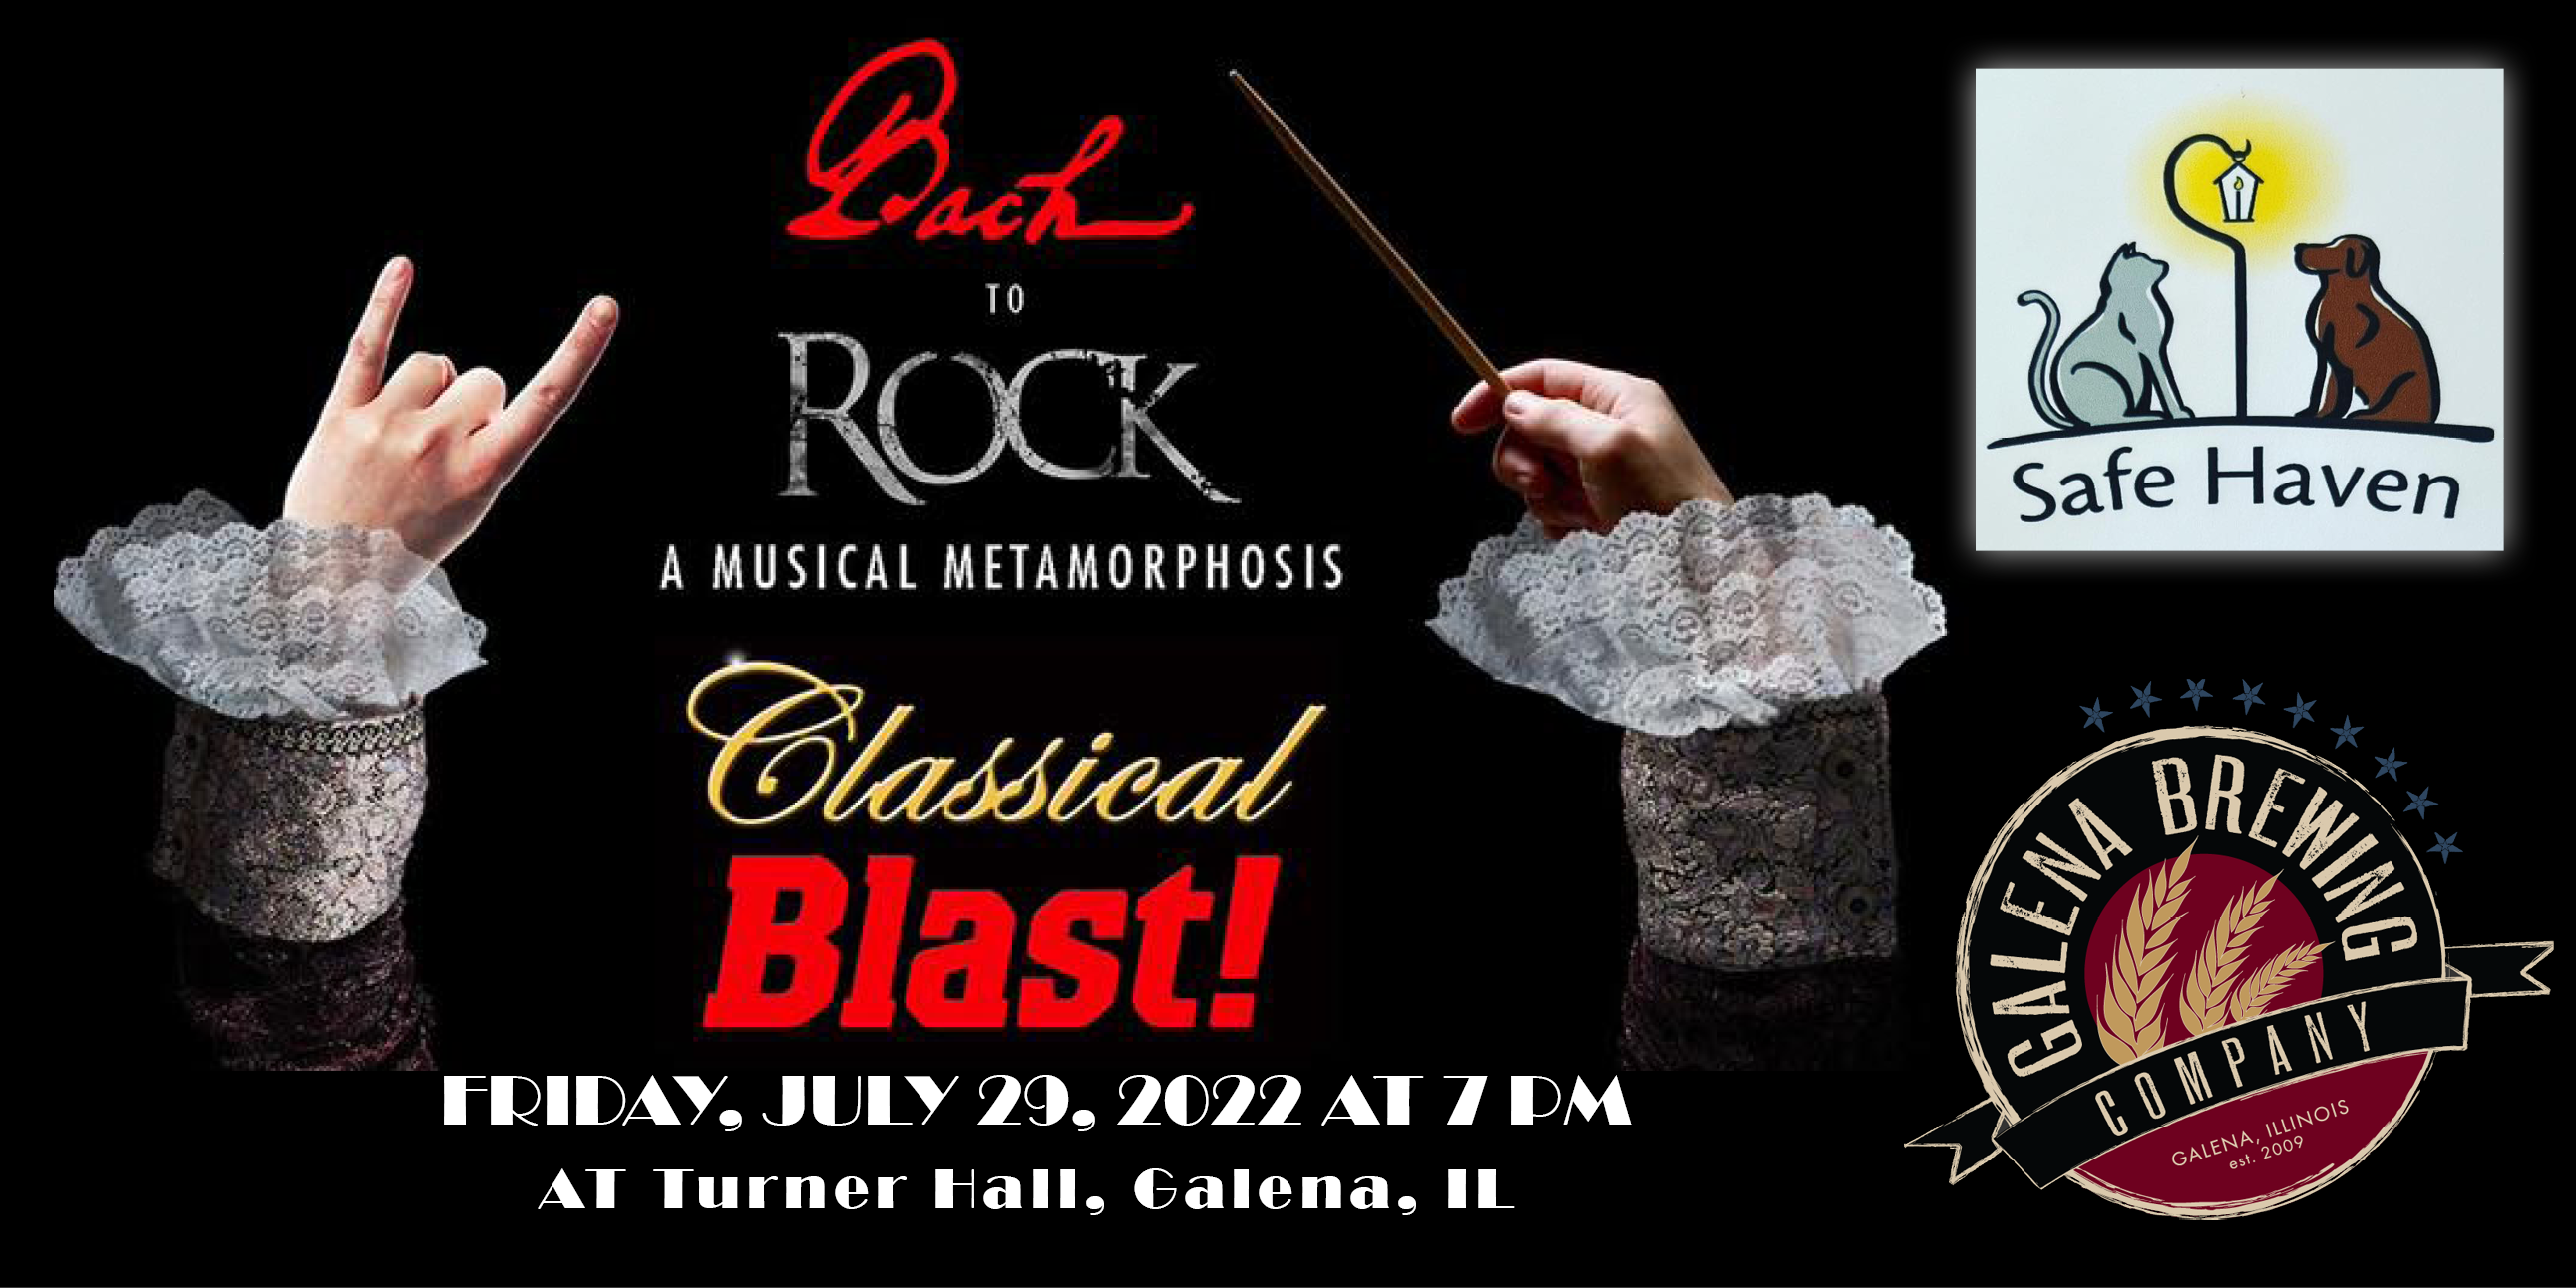 Classical blast event 29 Jul